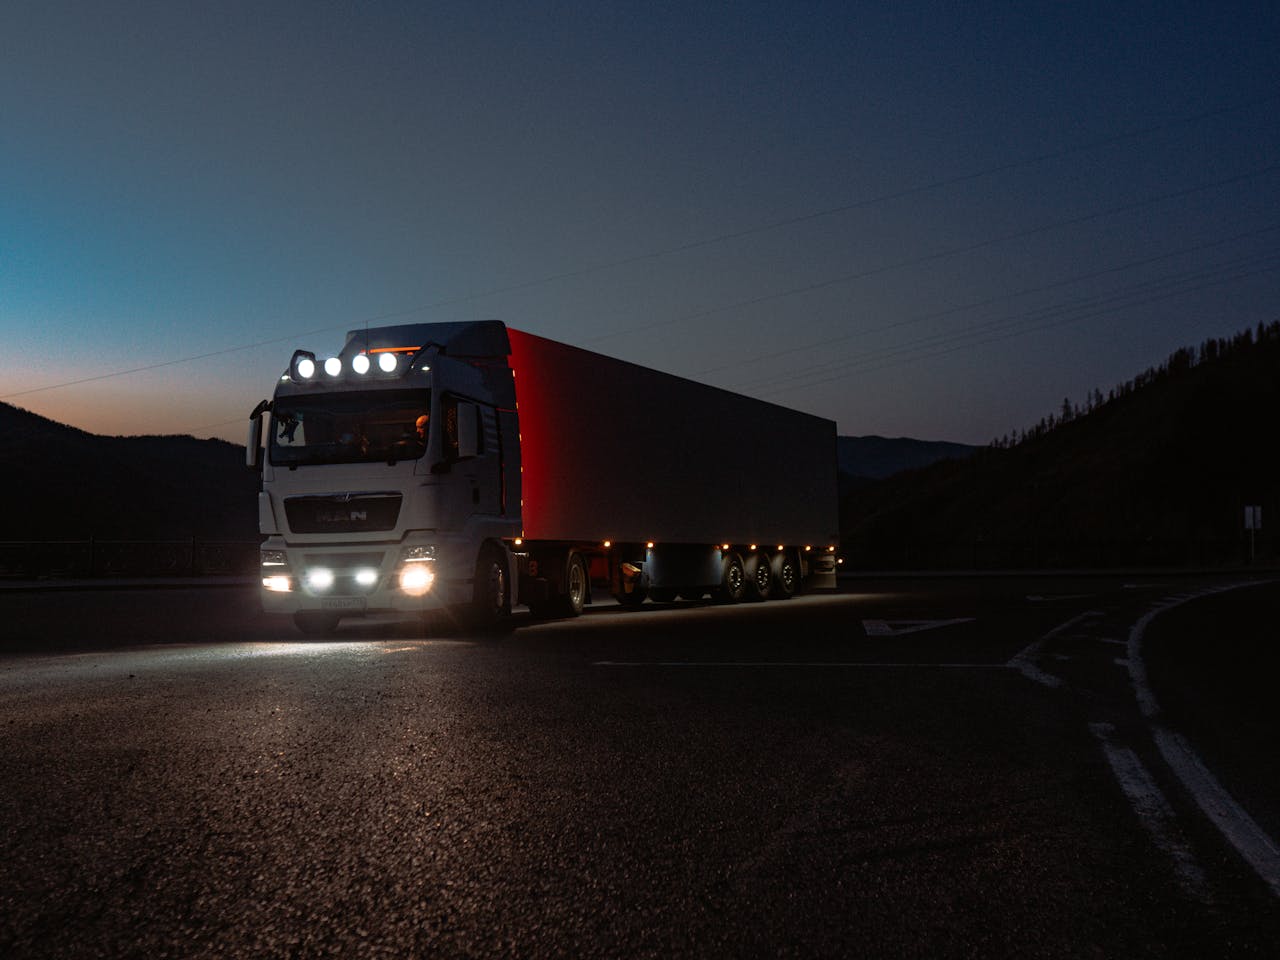 Condusul pe timp de noapte: Cum sa iti dotezi camionul pentru siguranta sporita pe vizibilitate redusa